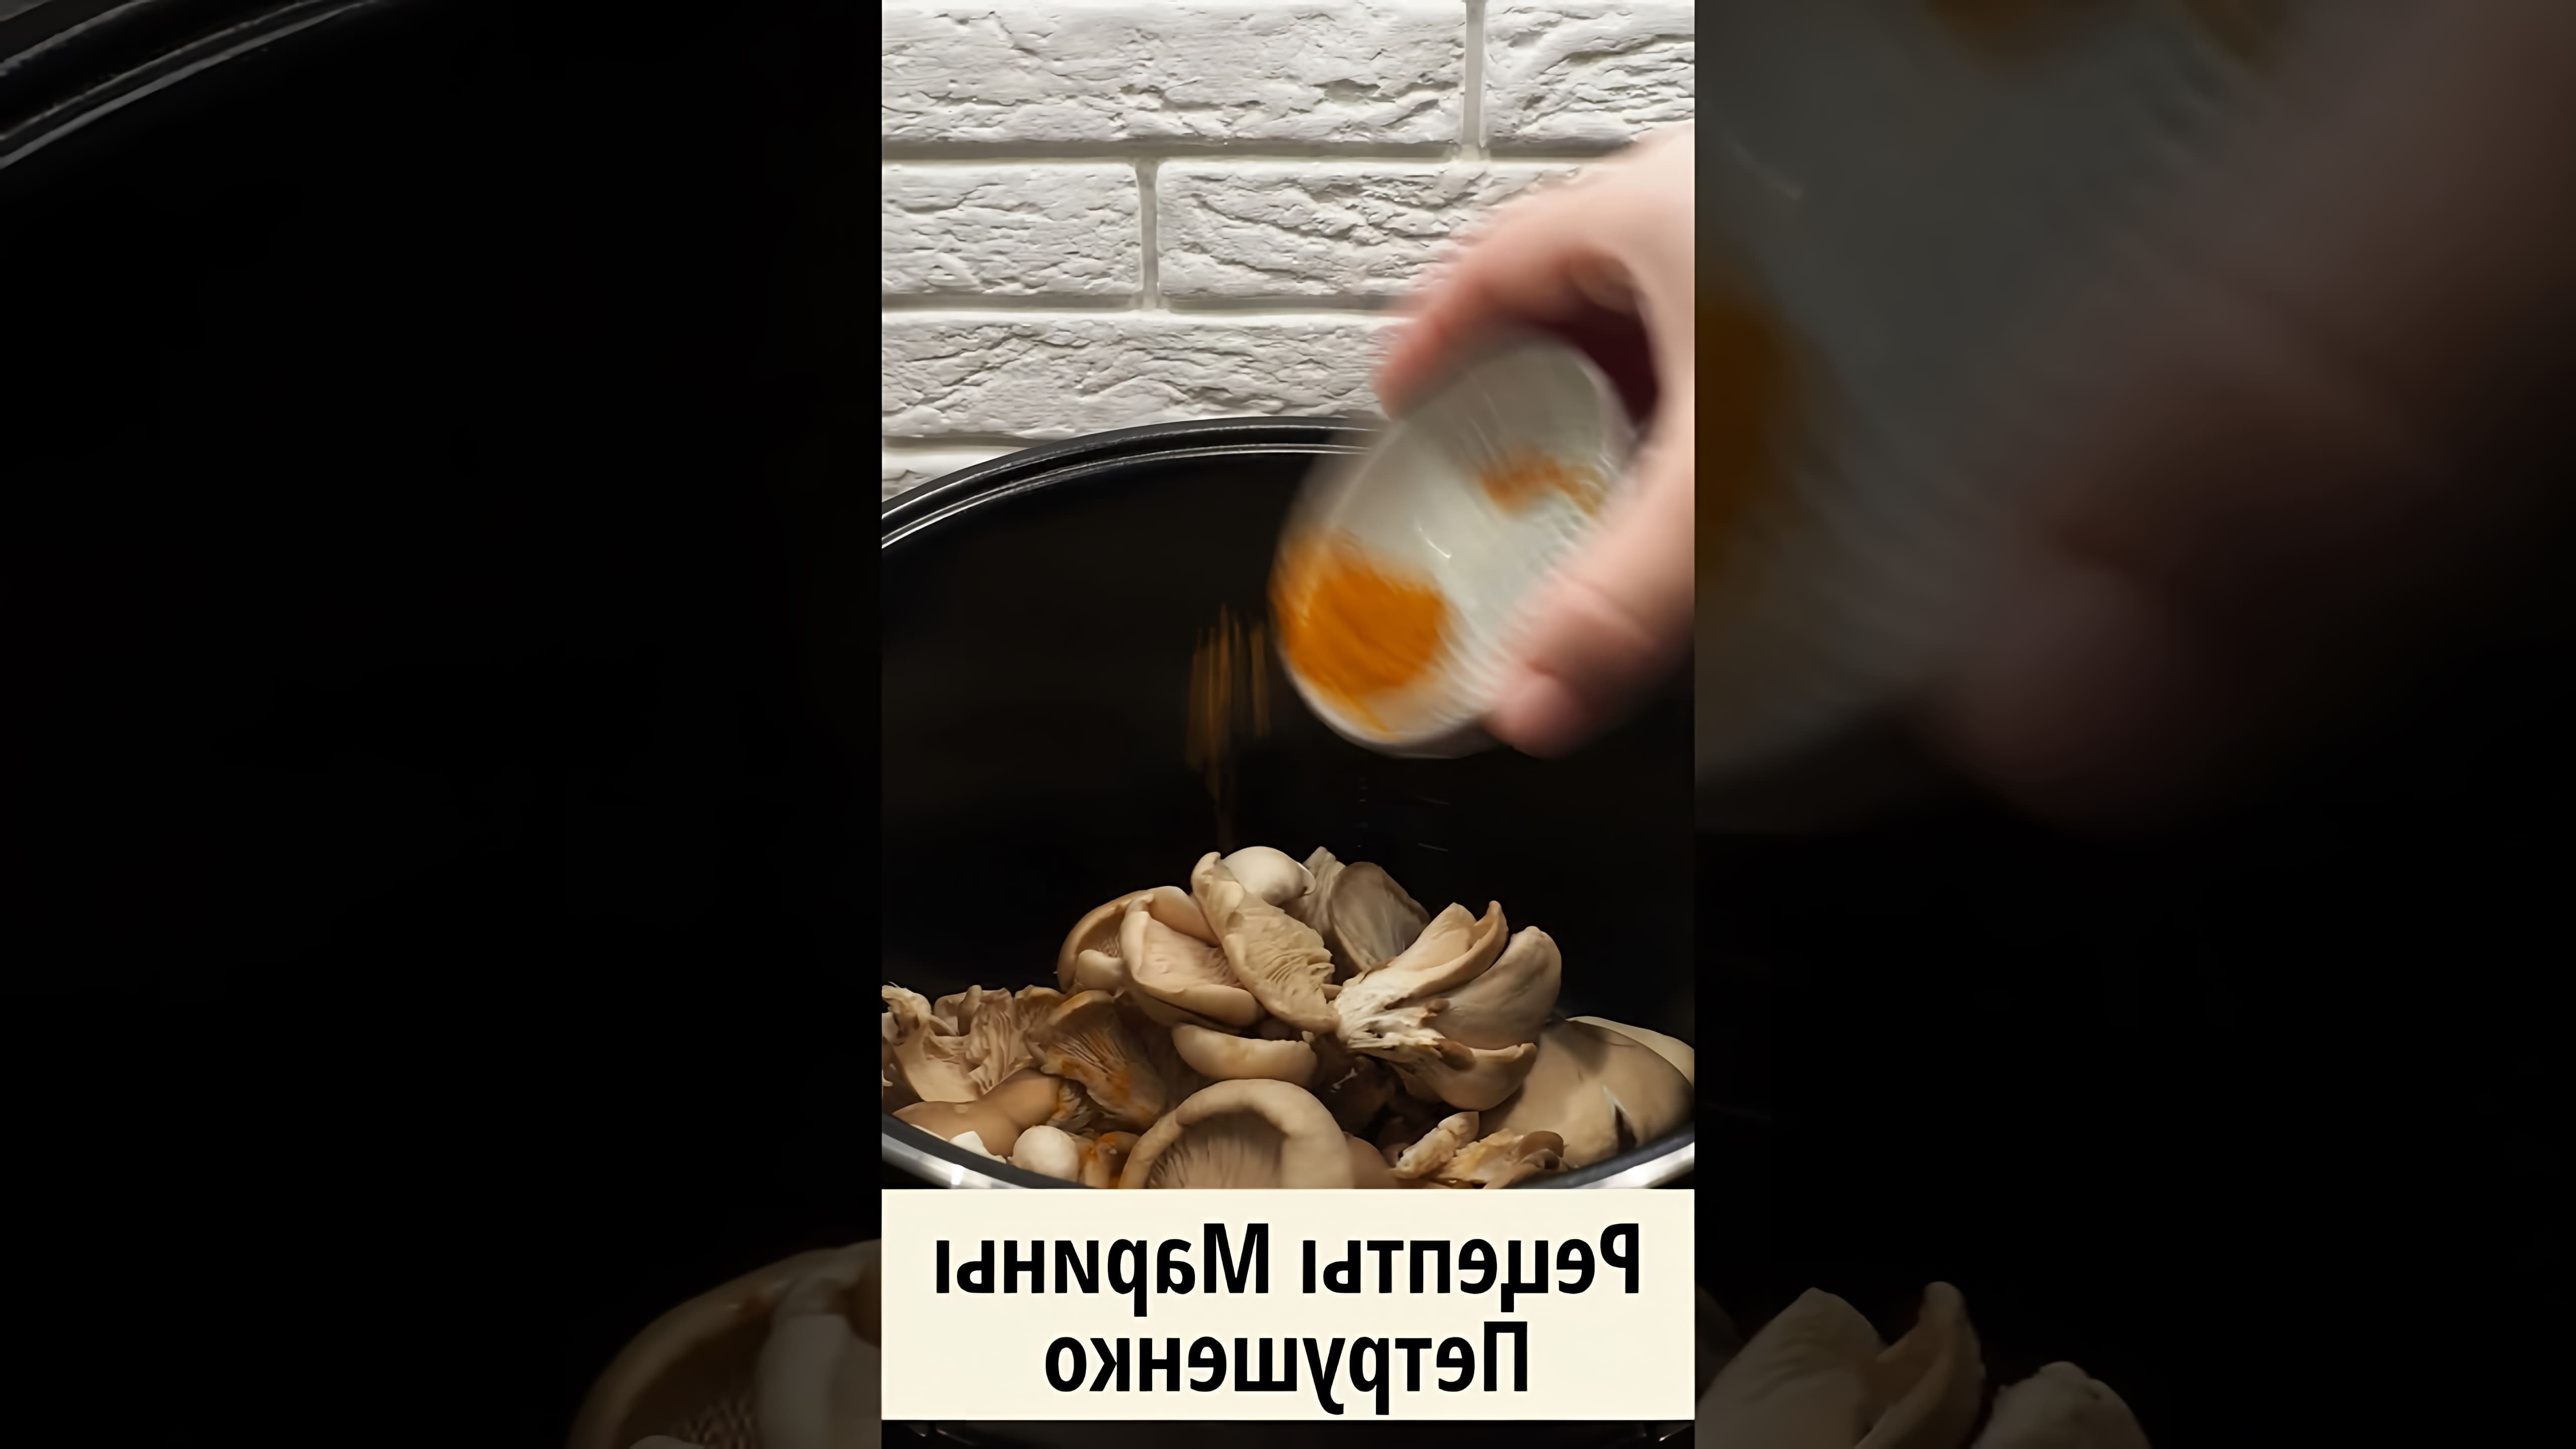 В этом видео демонстрируется рецепт приготовления жареных грибов в мультиварке